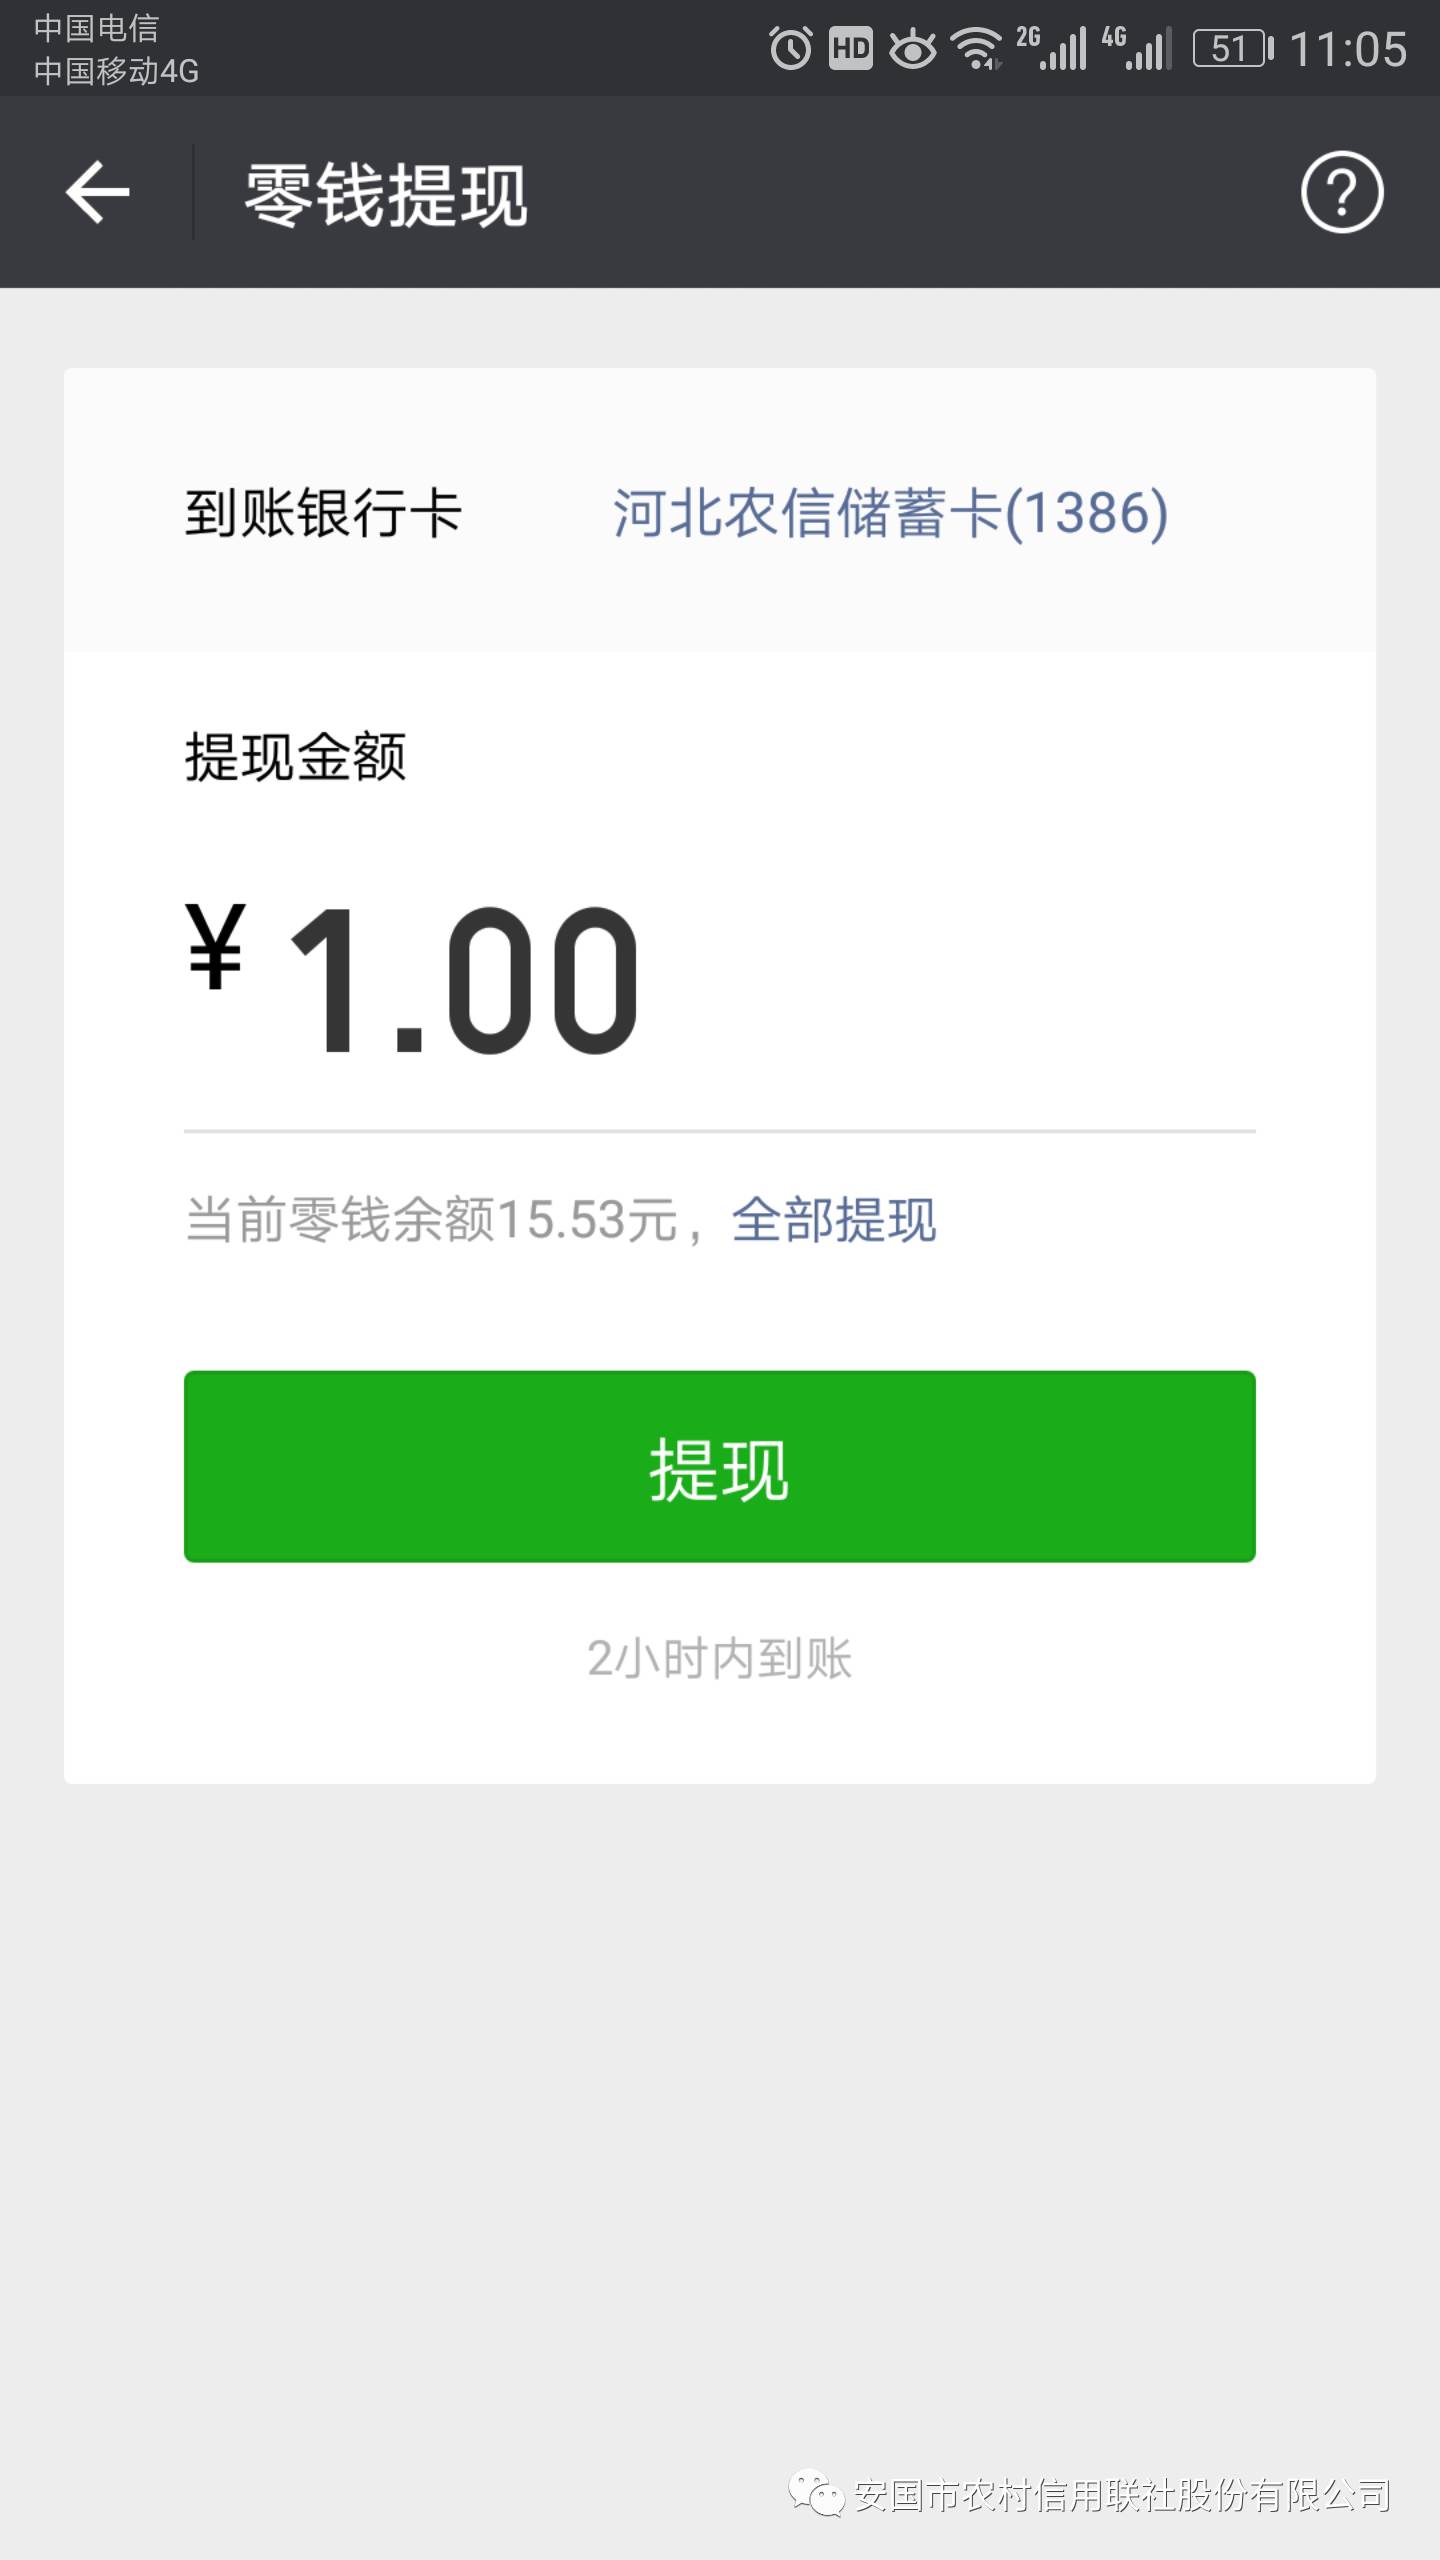 步骤~~~河北省农村信用合作社的信通卡已正式开通微信钱包的提现功能